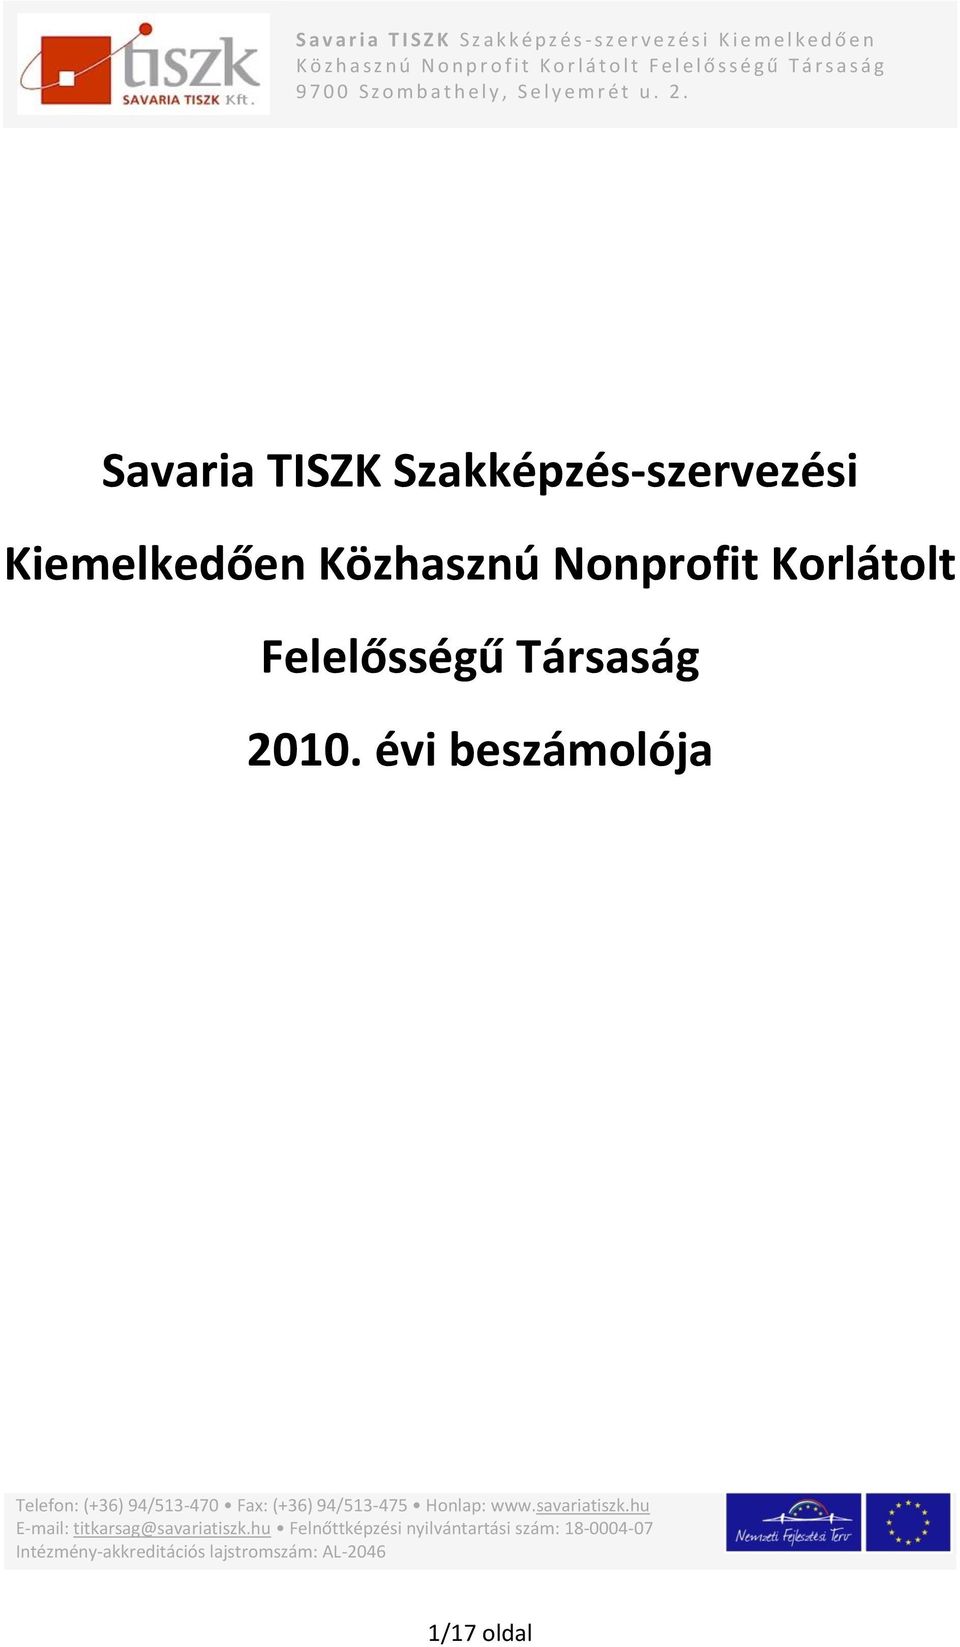 Savaria TISZK Szakképzés-szervezési Kiemelkedően Közhasznú Nonprofit Korlátolt Felelősségű Társaság ja Telefon: (+36) 94/513-470 Fax: